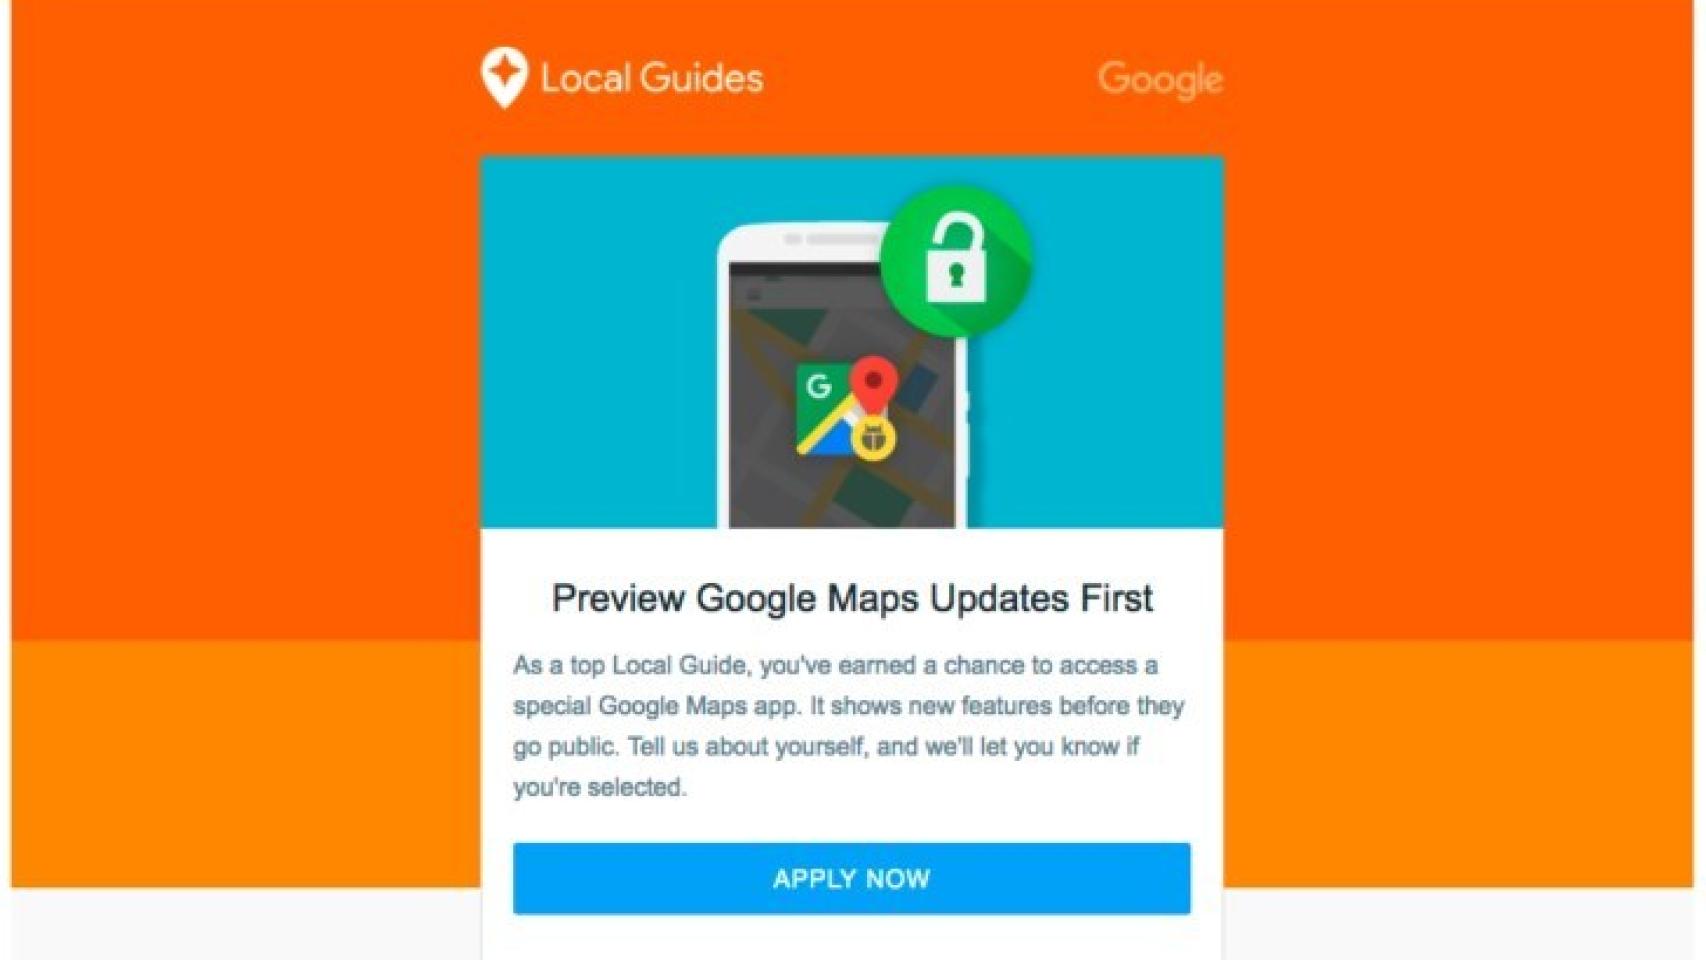 Los Local Guides de nivel 6 podrán probar novedades de Google Maps antes que nadie